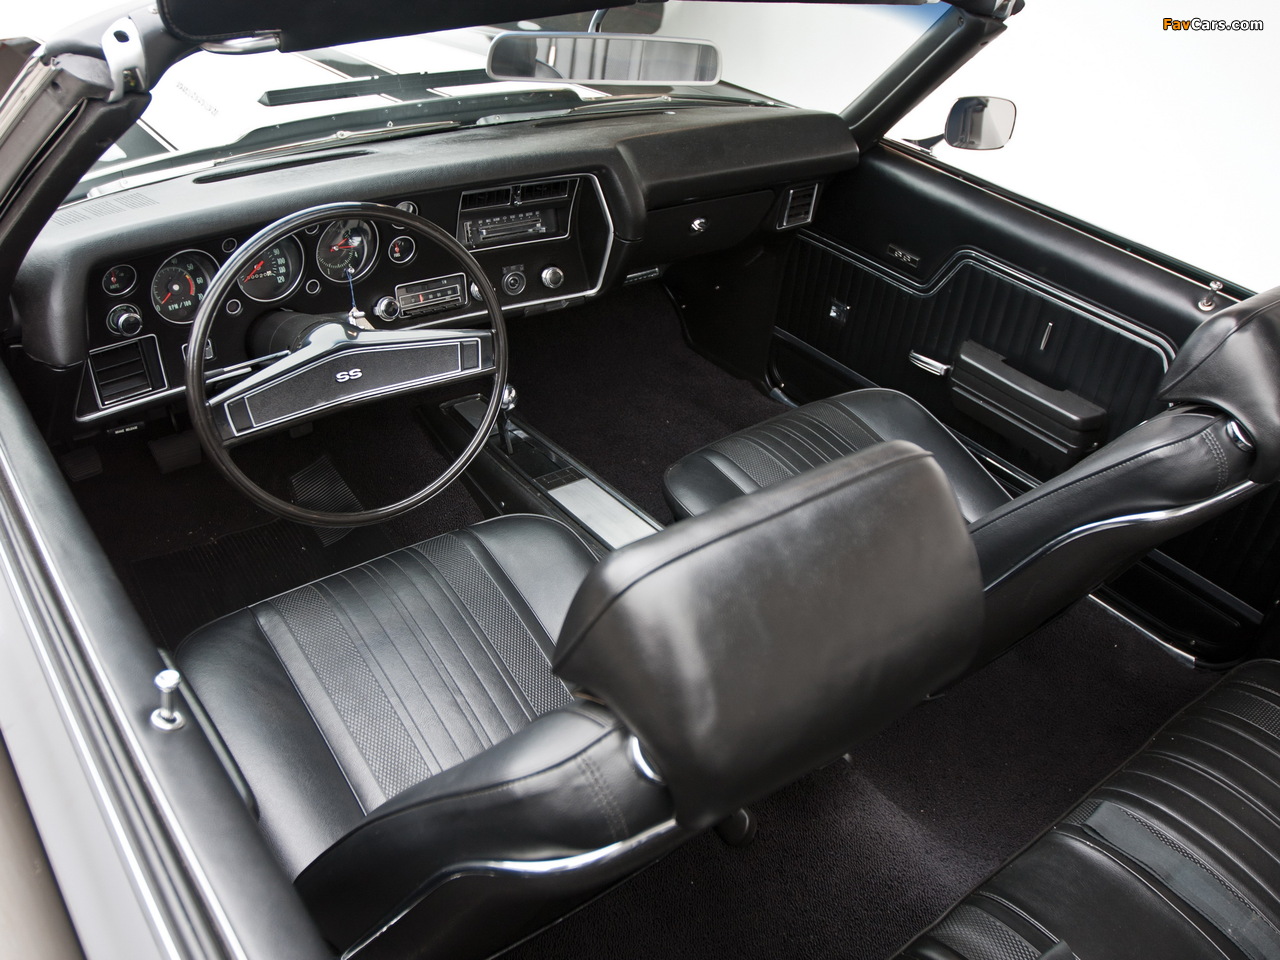 Chevrolet Chevelle SS 396 Hardtop Coupe 1970 photos (1280 x 960)